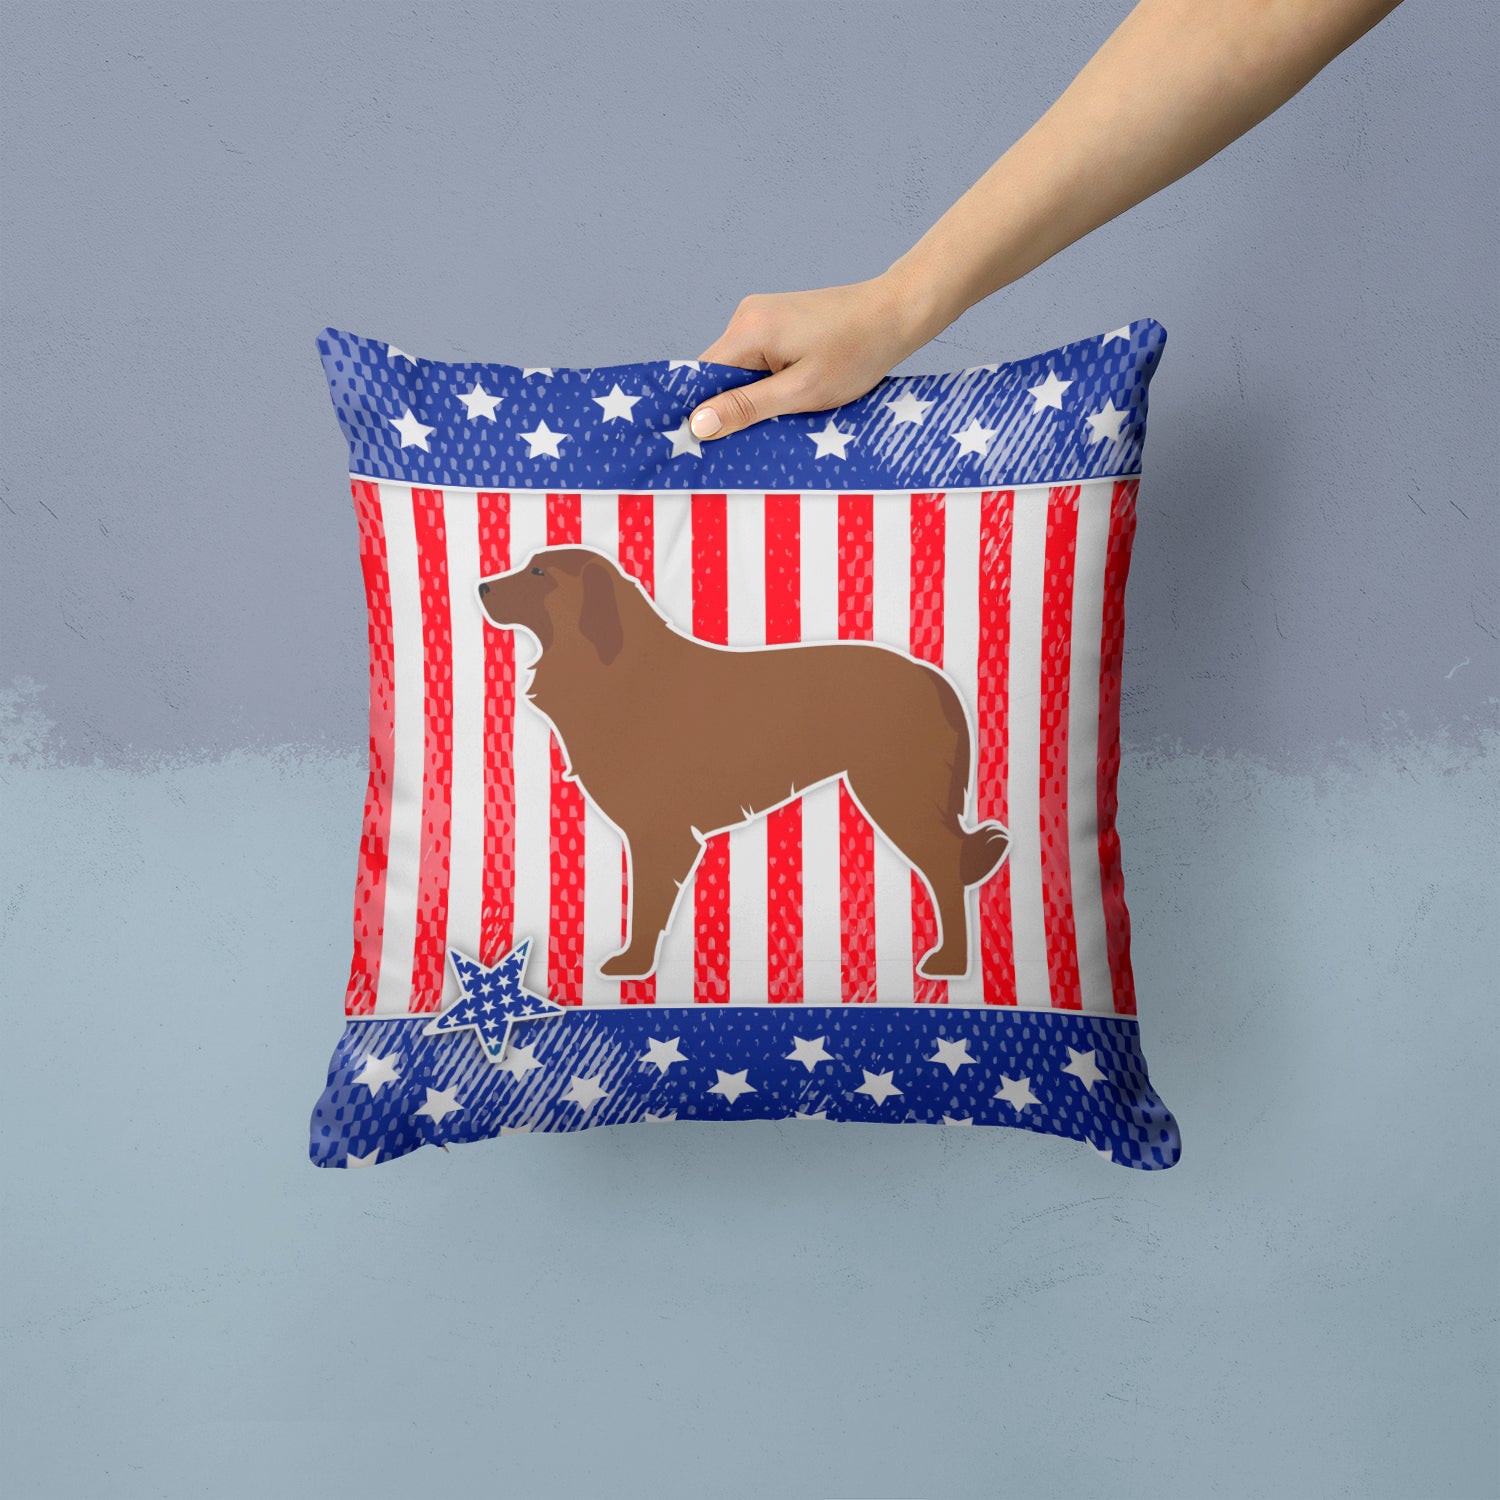 USA Patriotic Portuguese Sheepdog Dog Fabric Decorative Pillow BB3331PW1414 - the-store.com